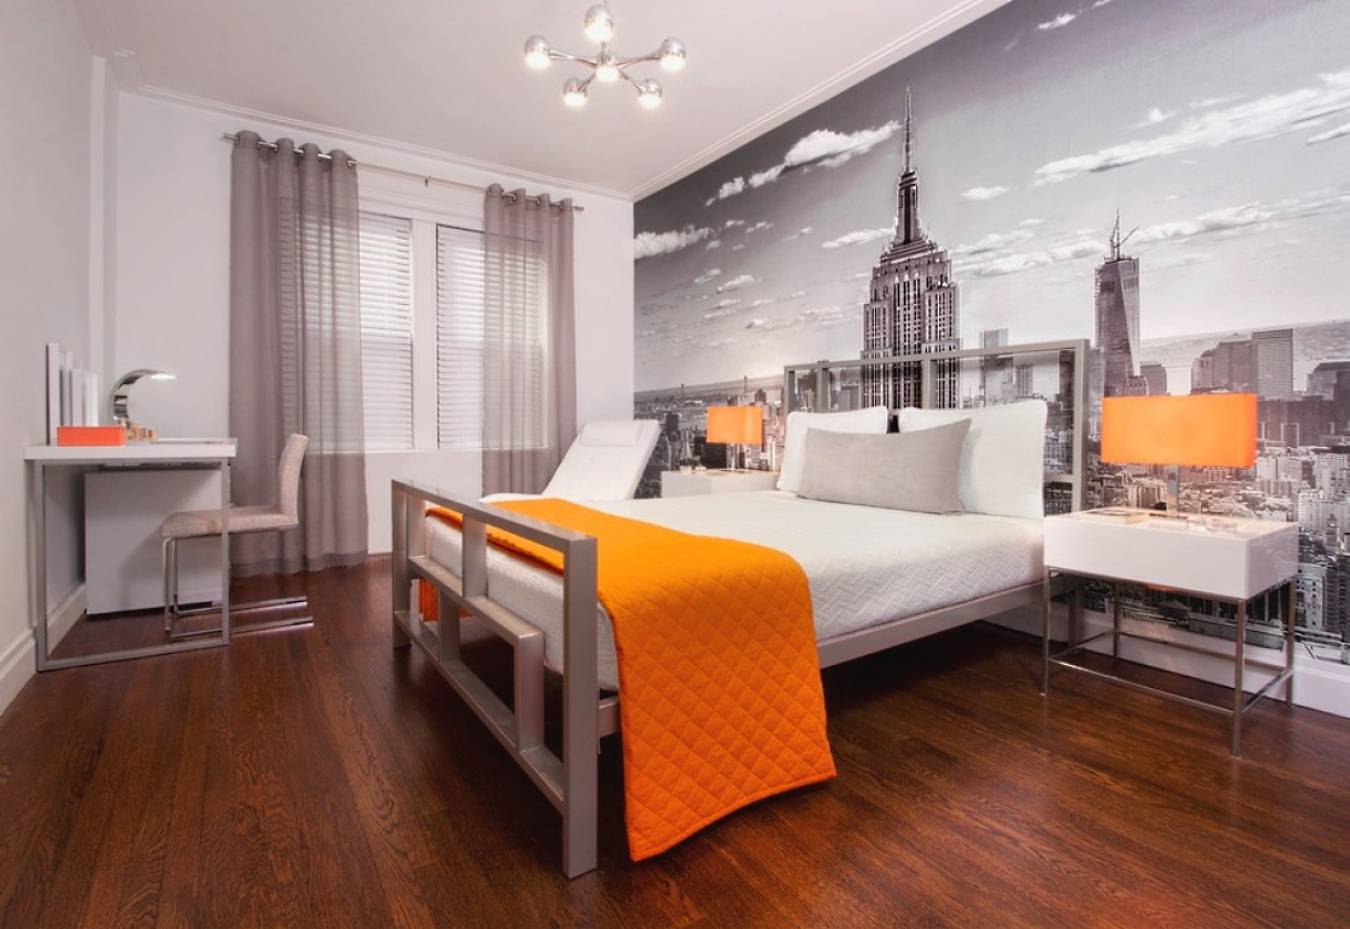 Красивые обои в спальню (200 фото идей): новинки дизайна интерьера и правила сочетания обоев по цвету, стилю, рисунку